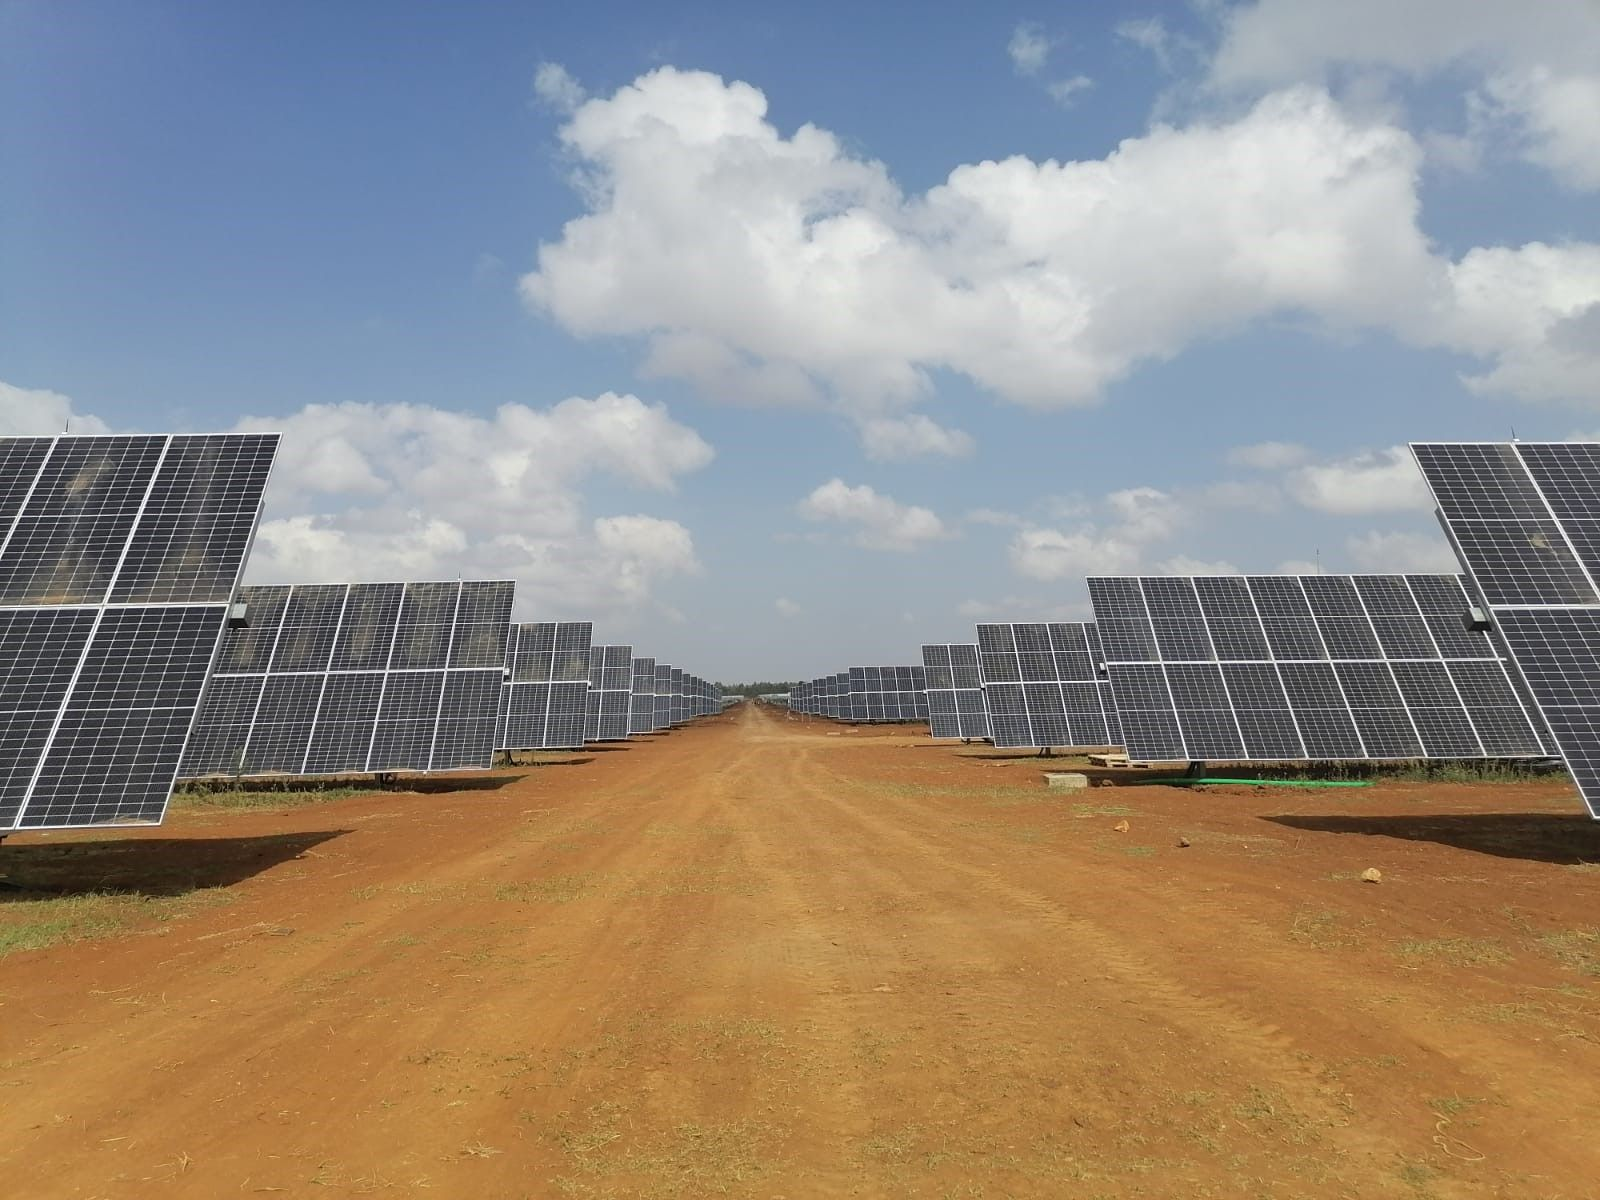 Projekt solární energie Kesses o výkonu 55,6 mw využívá lineární sledovač powernice